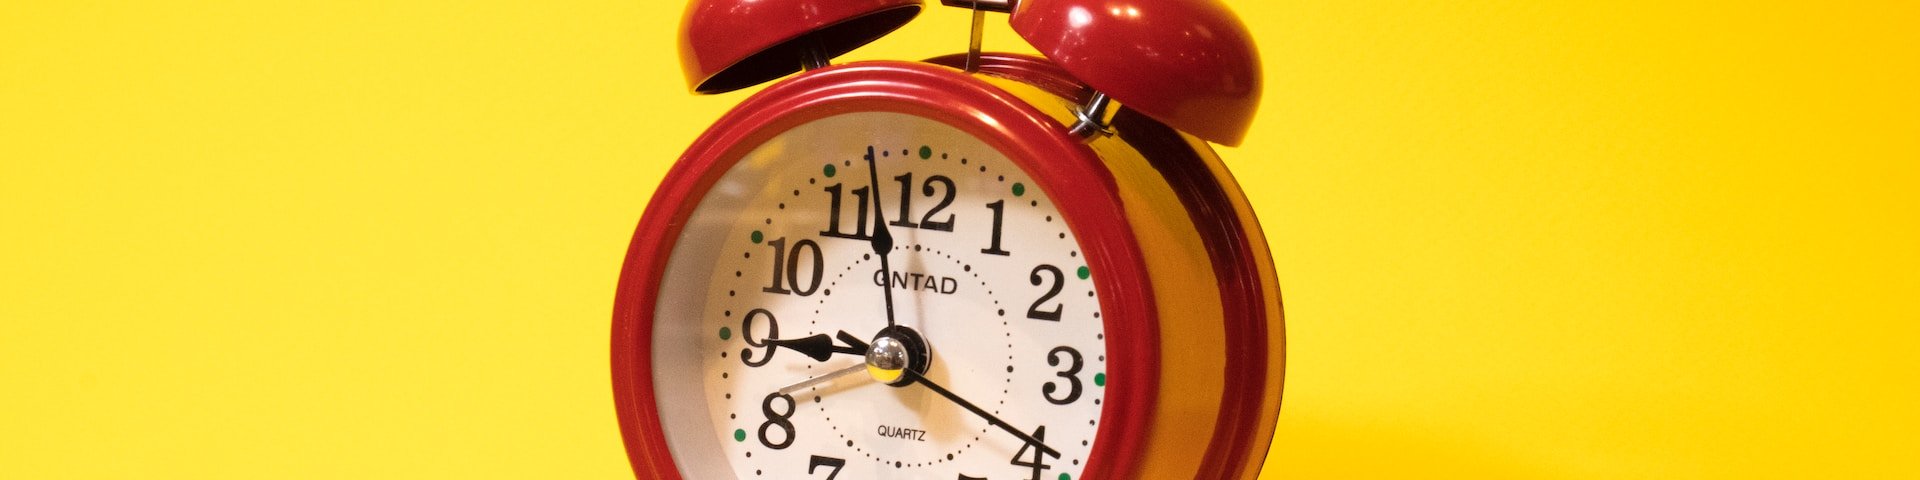 pilt punasest kellast kollasel taustal sümboliseerimaks prokrastineerimist